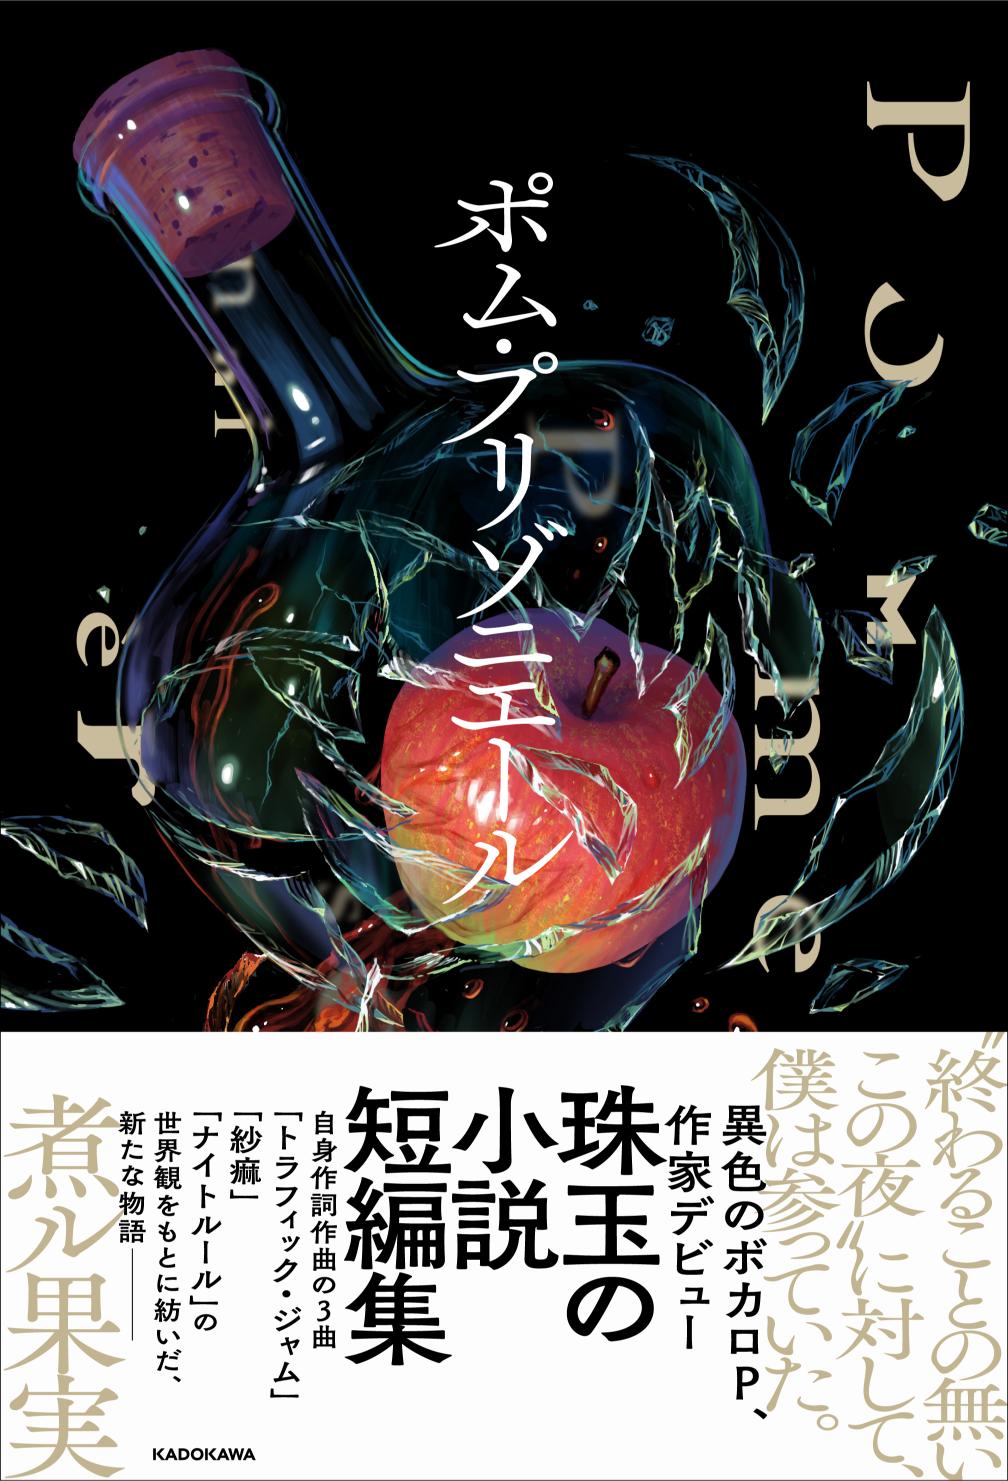 ボカロP・煮ル果実、KADOKAWAから小説出版の画像